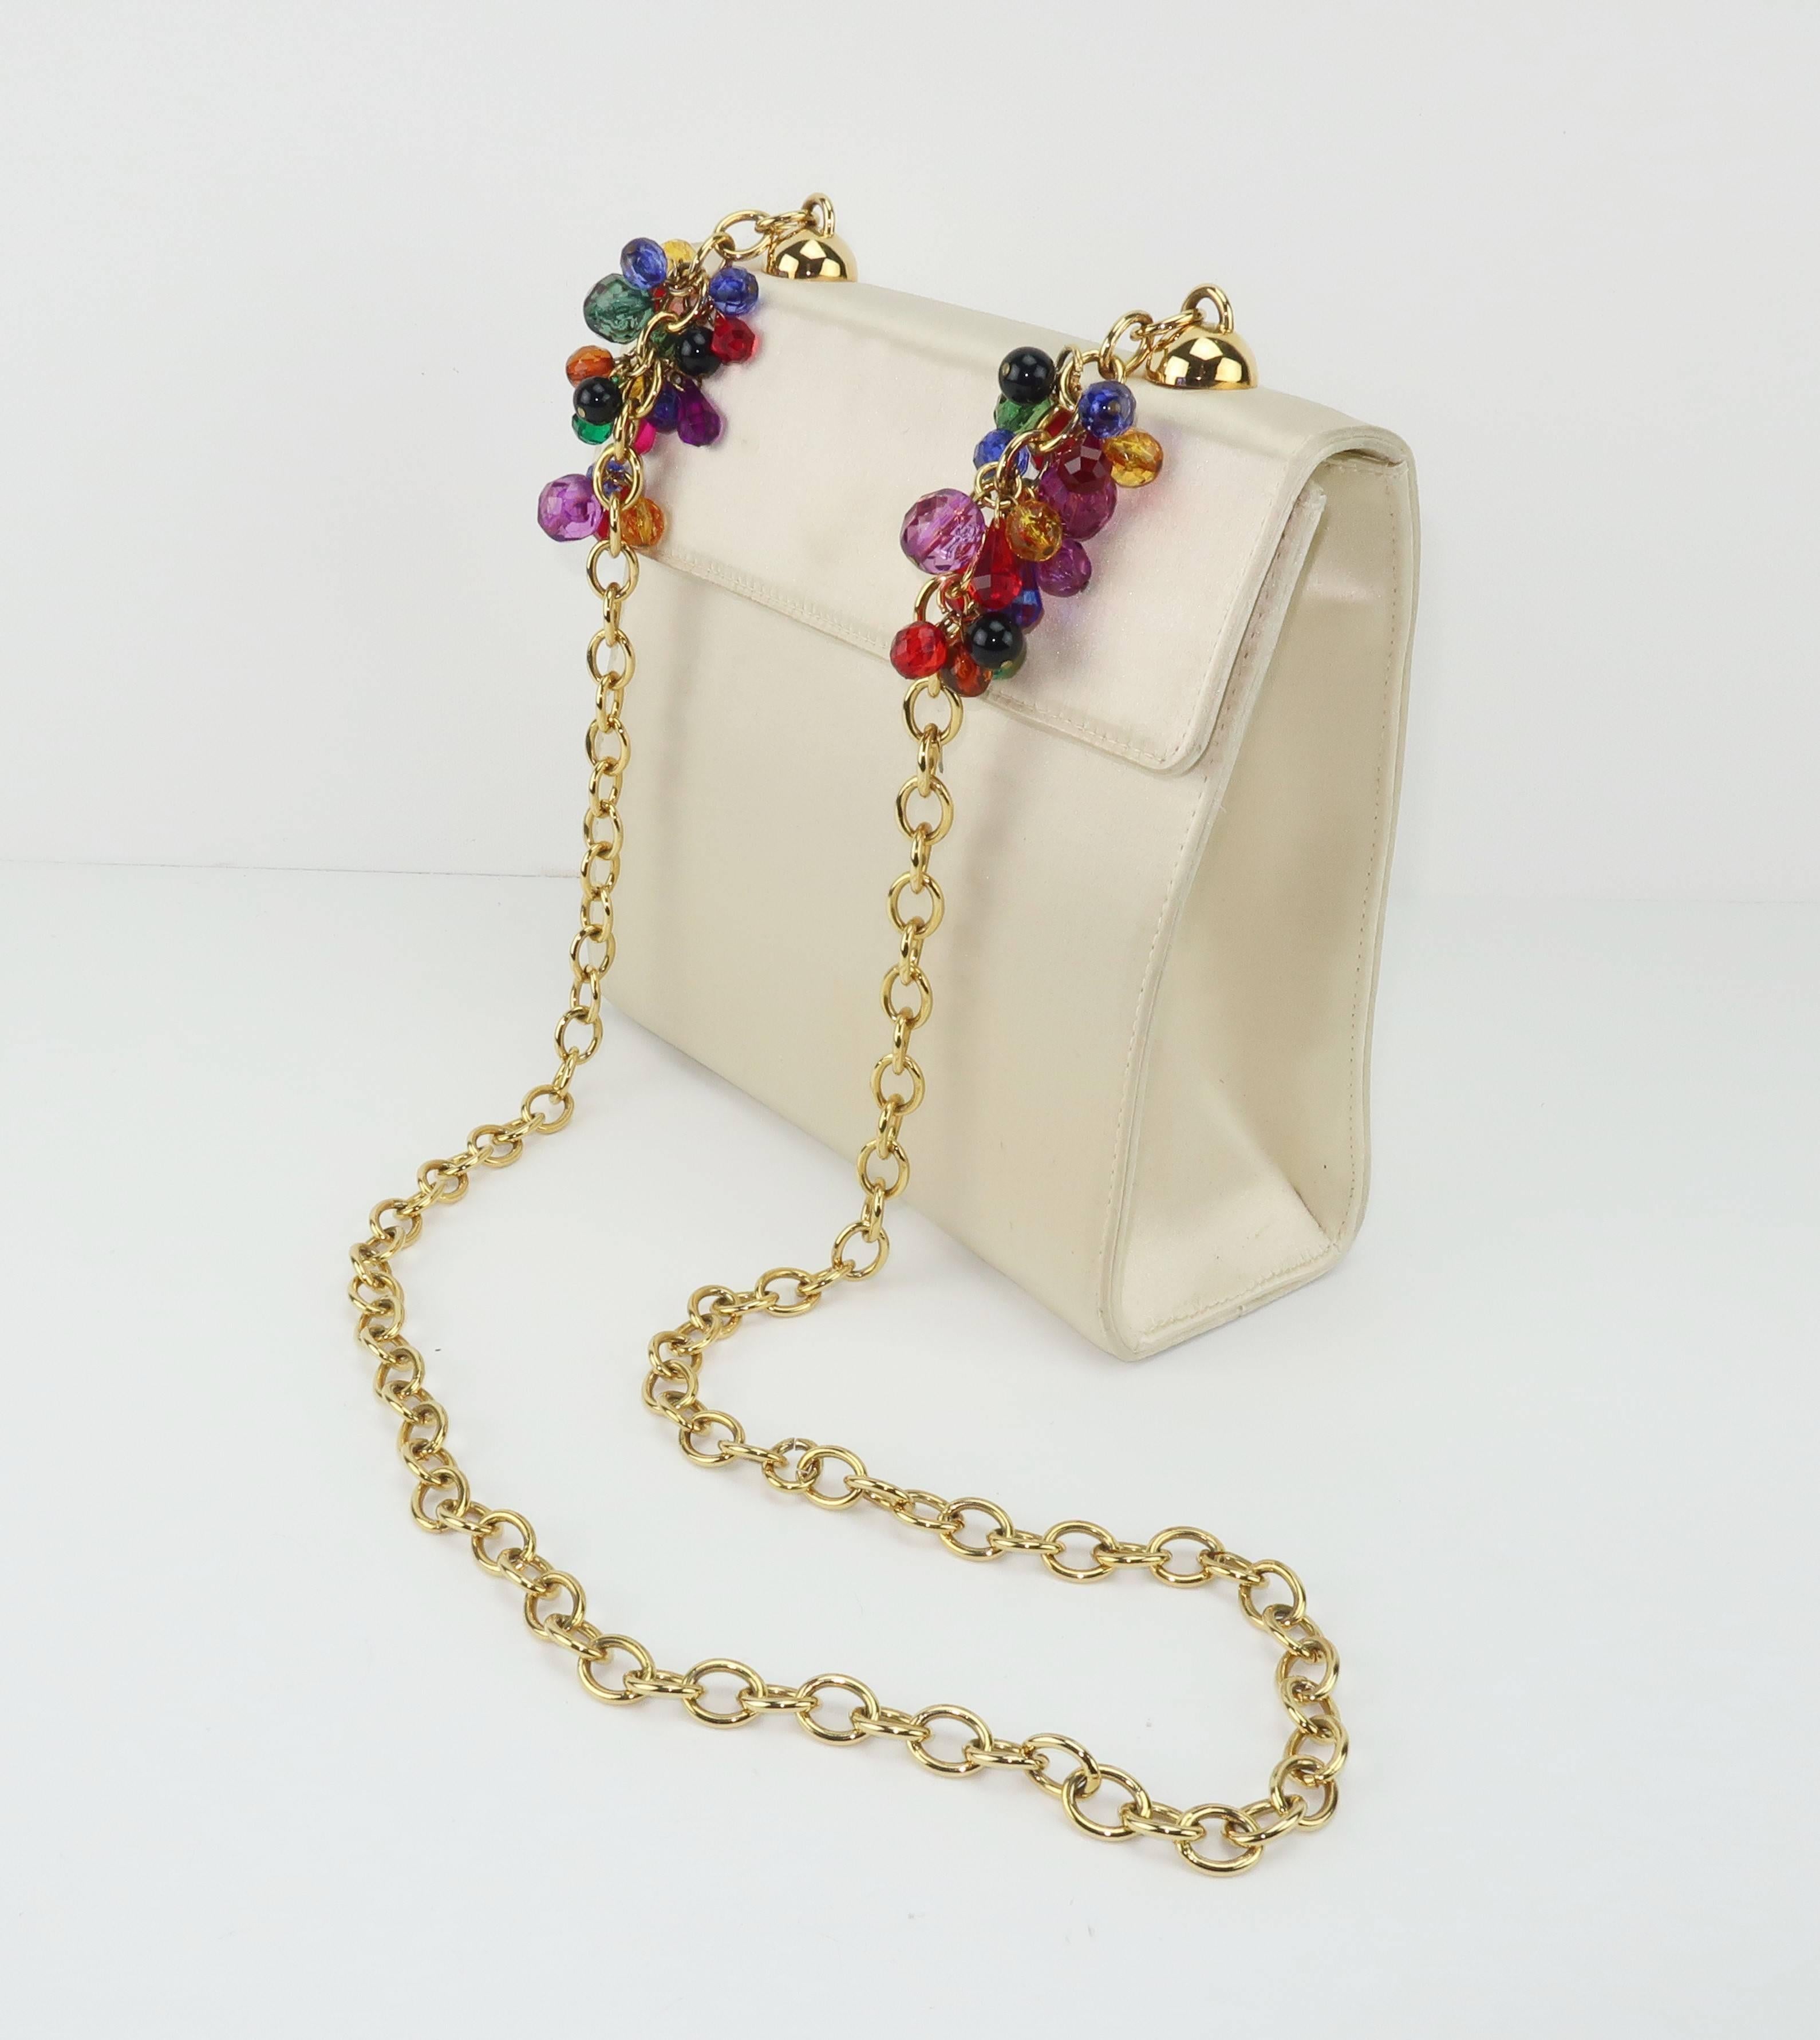 Beige Italian 1980's Neiman Marcus Satin Handbag With Bejeweled Handle